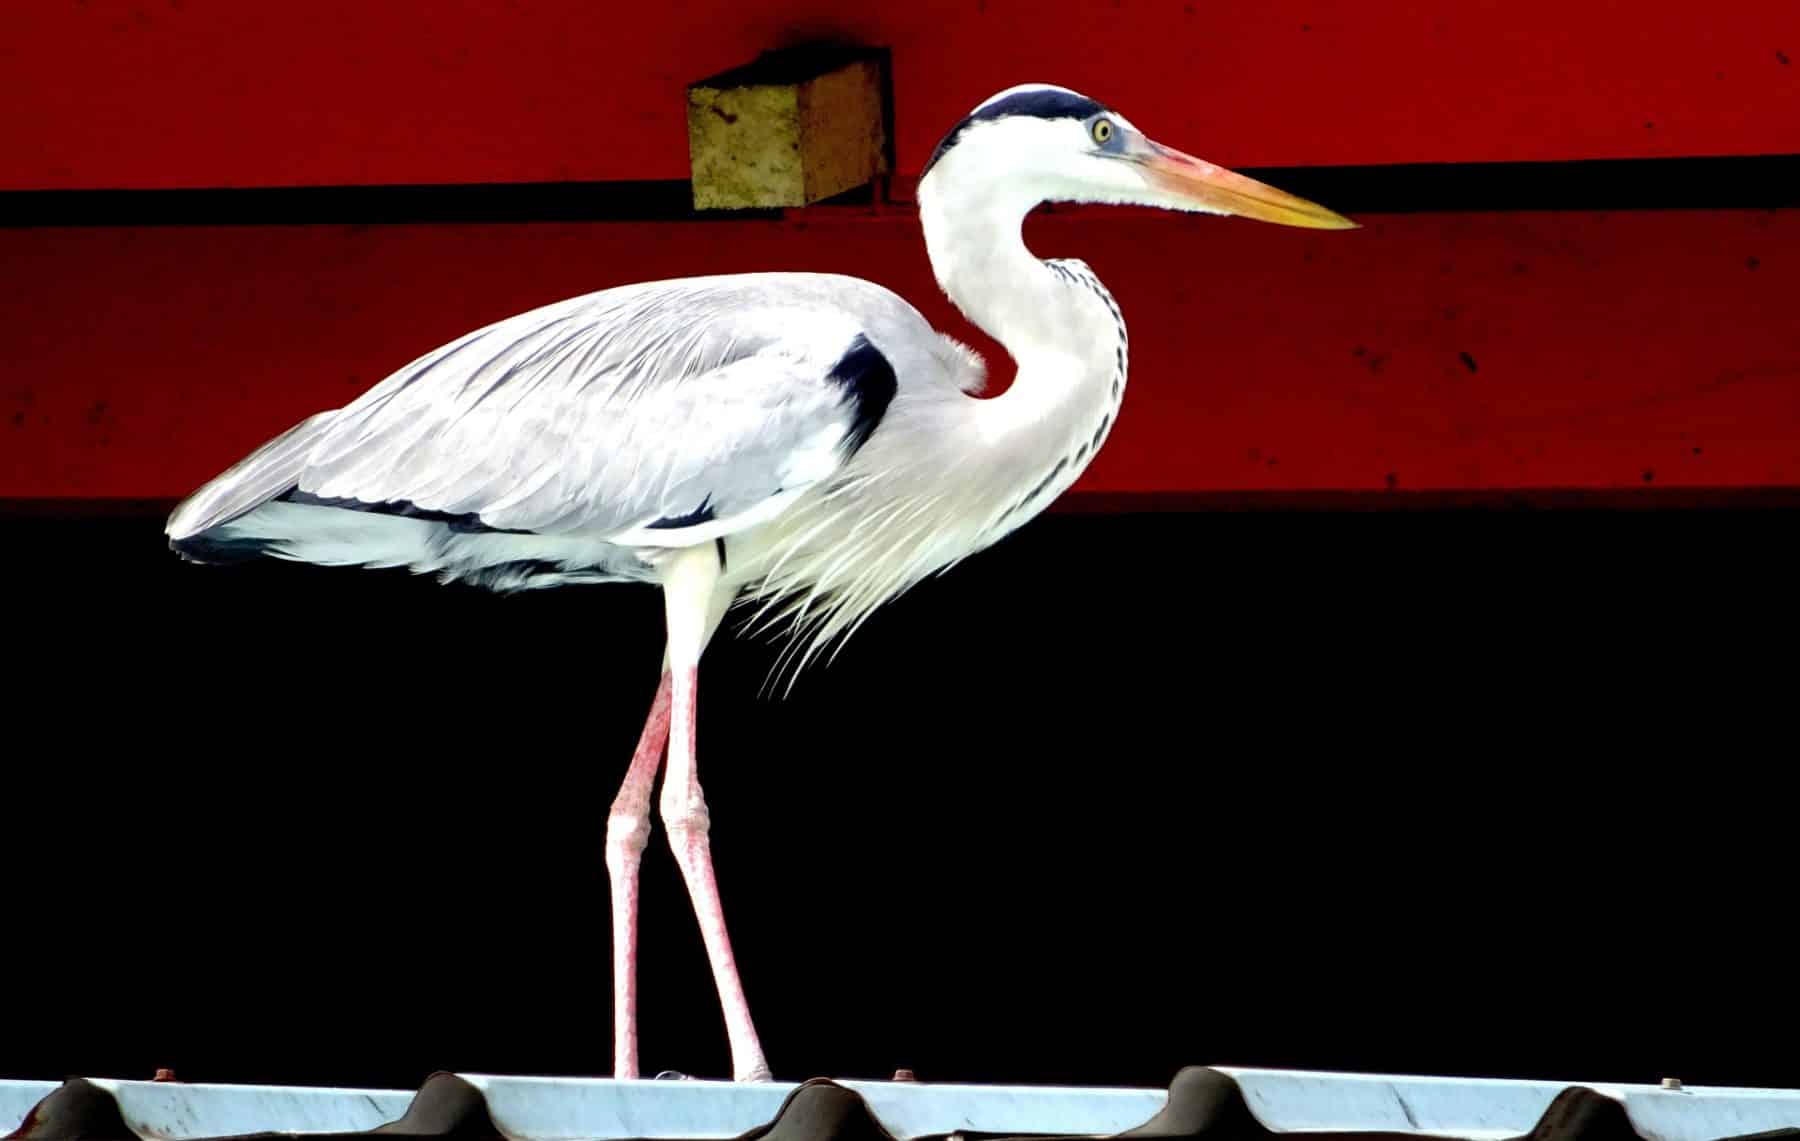 Ein Graureiher steht auf einem Ziegeldach und hebt sich deutlich vom roten Hintergrund ab. Der Vogel ist leicht nach links gedreht, sodass sein langer Hals und sein Schnabel deutlich zu erkennen sind.